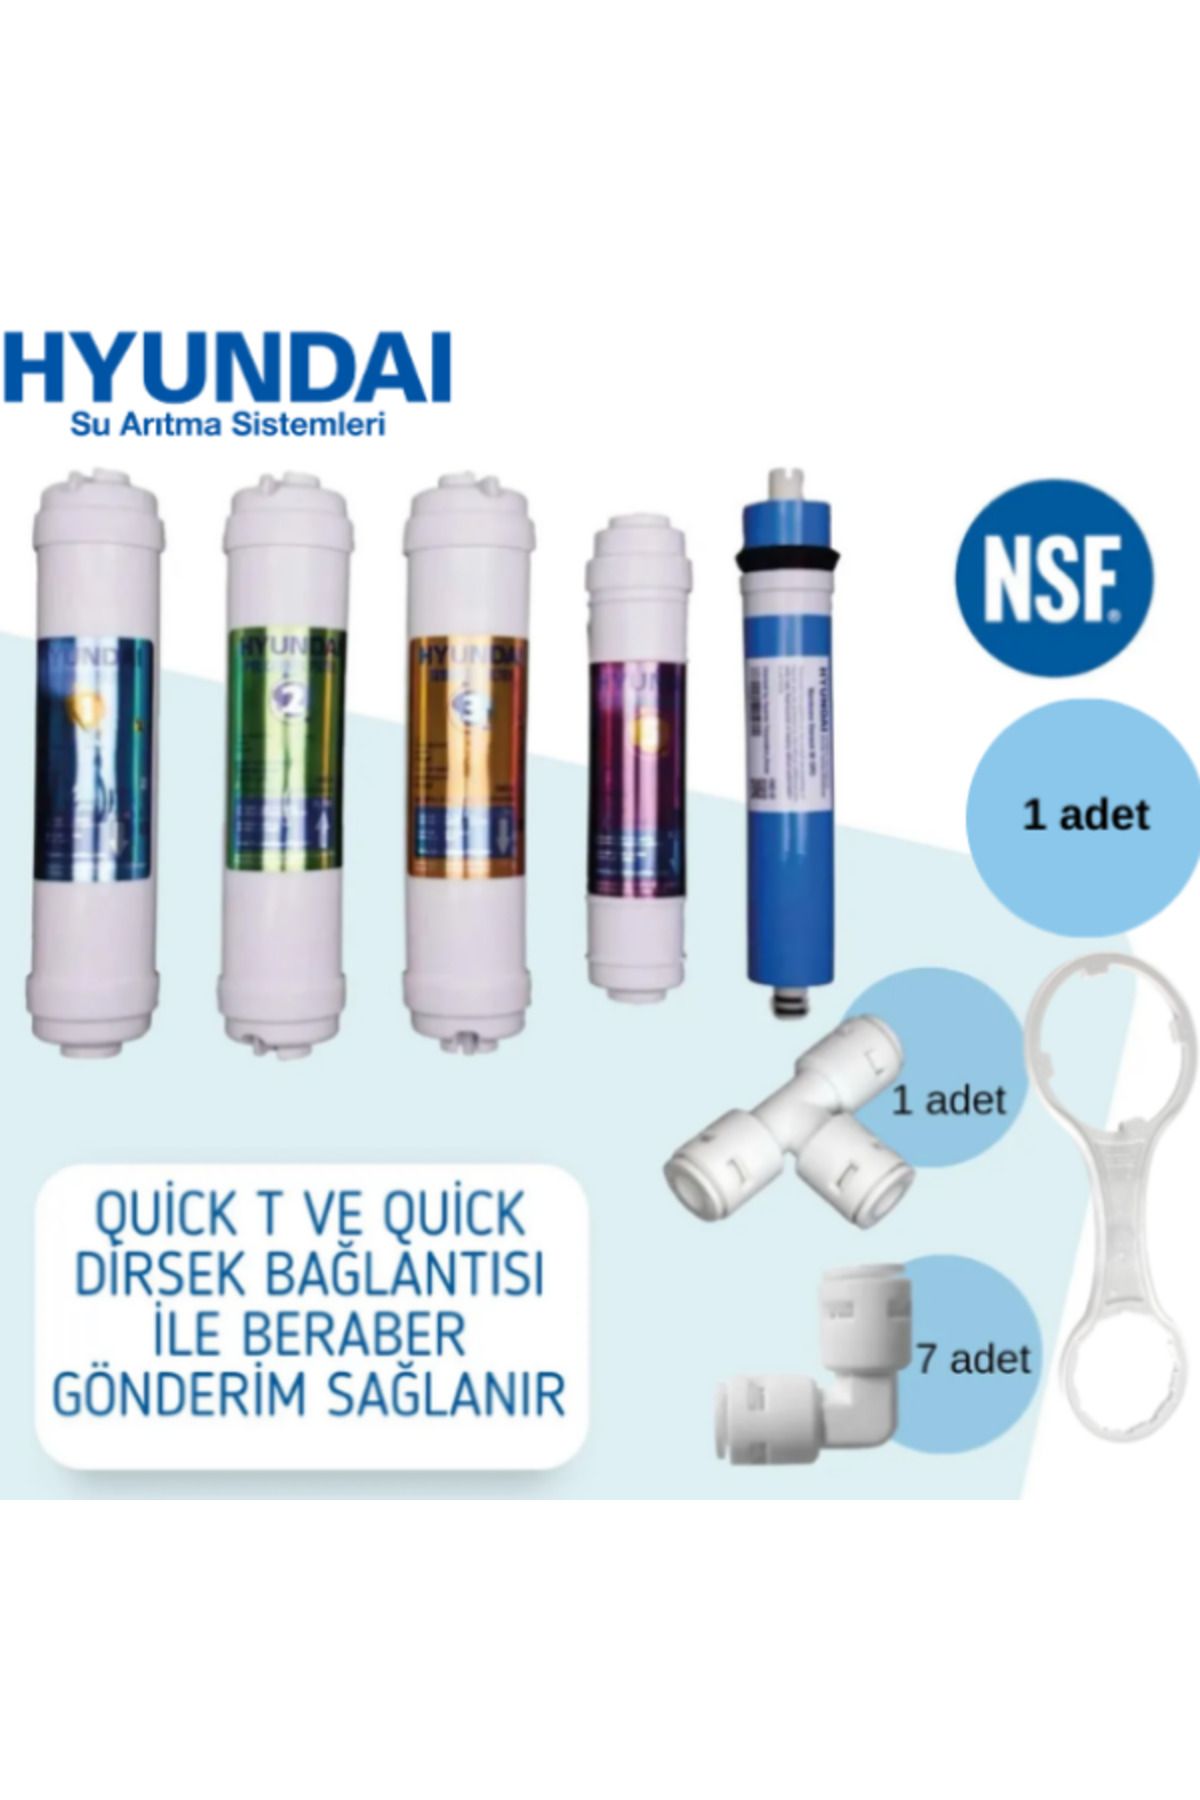 Hyundai Su Arıtma Filtre Seti 5'li Takım ve Bağlantı Parçaları - Nsf Onaylı - Orijinal